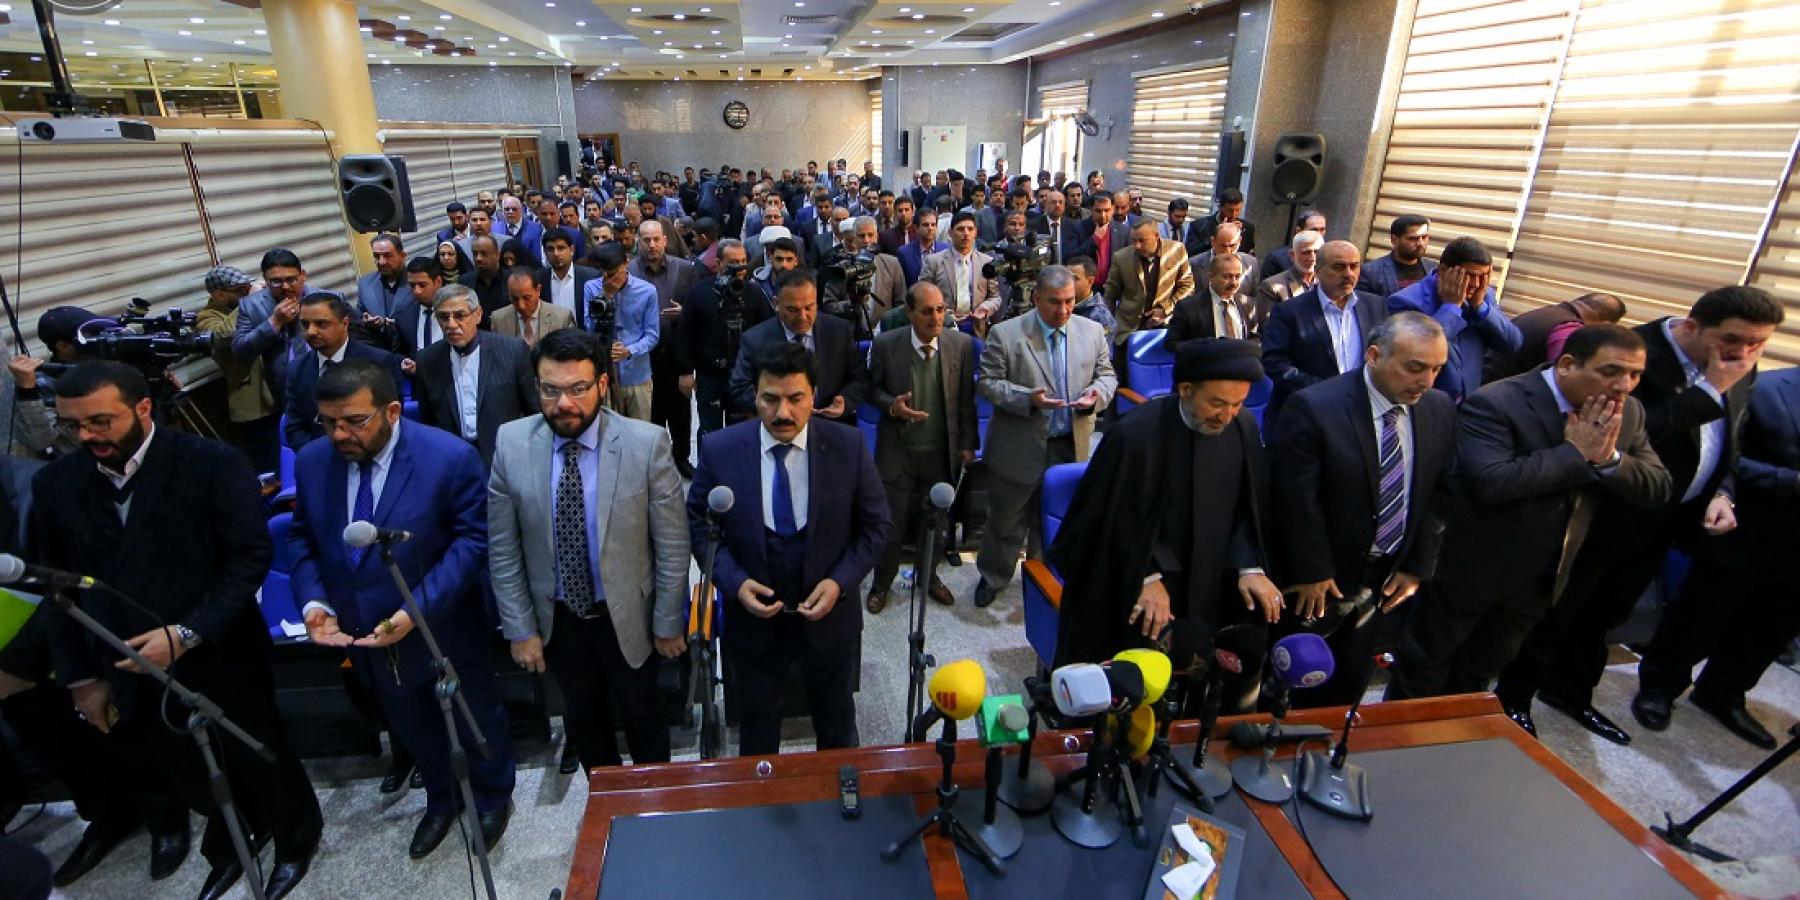 برعاية العتبة العلوية المقدسة.. انطلاق أعمال المؤتمر الثاني لاتحاد الإذاعات والتلفزيونات العراقية